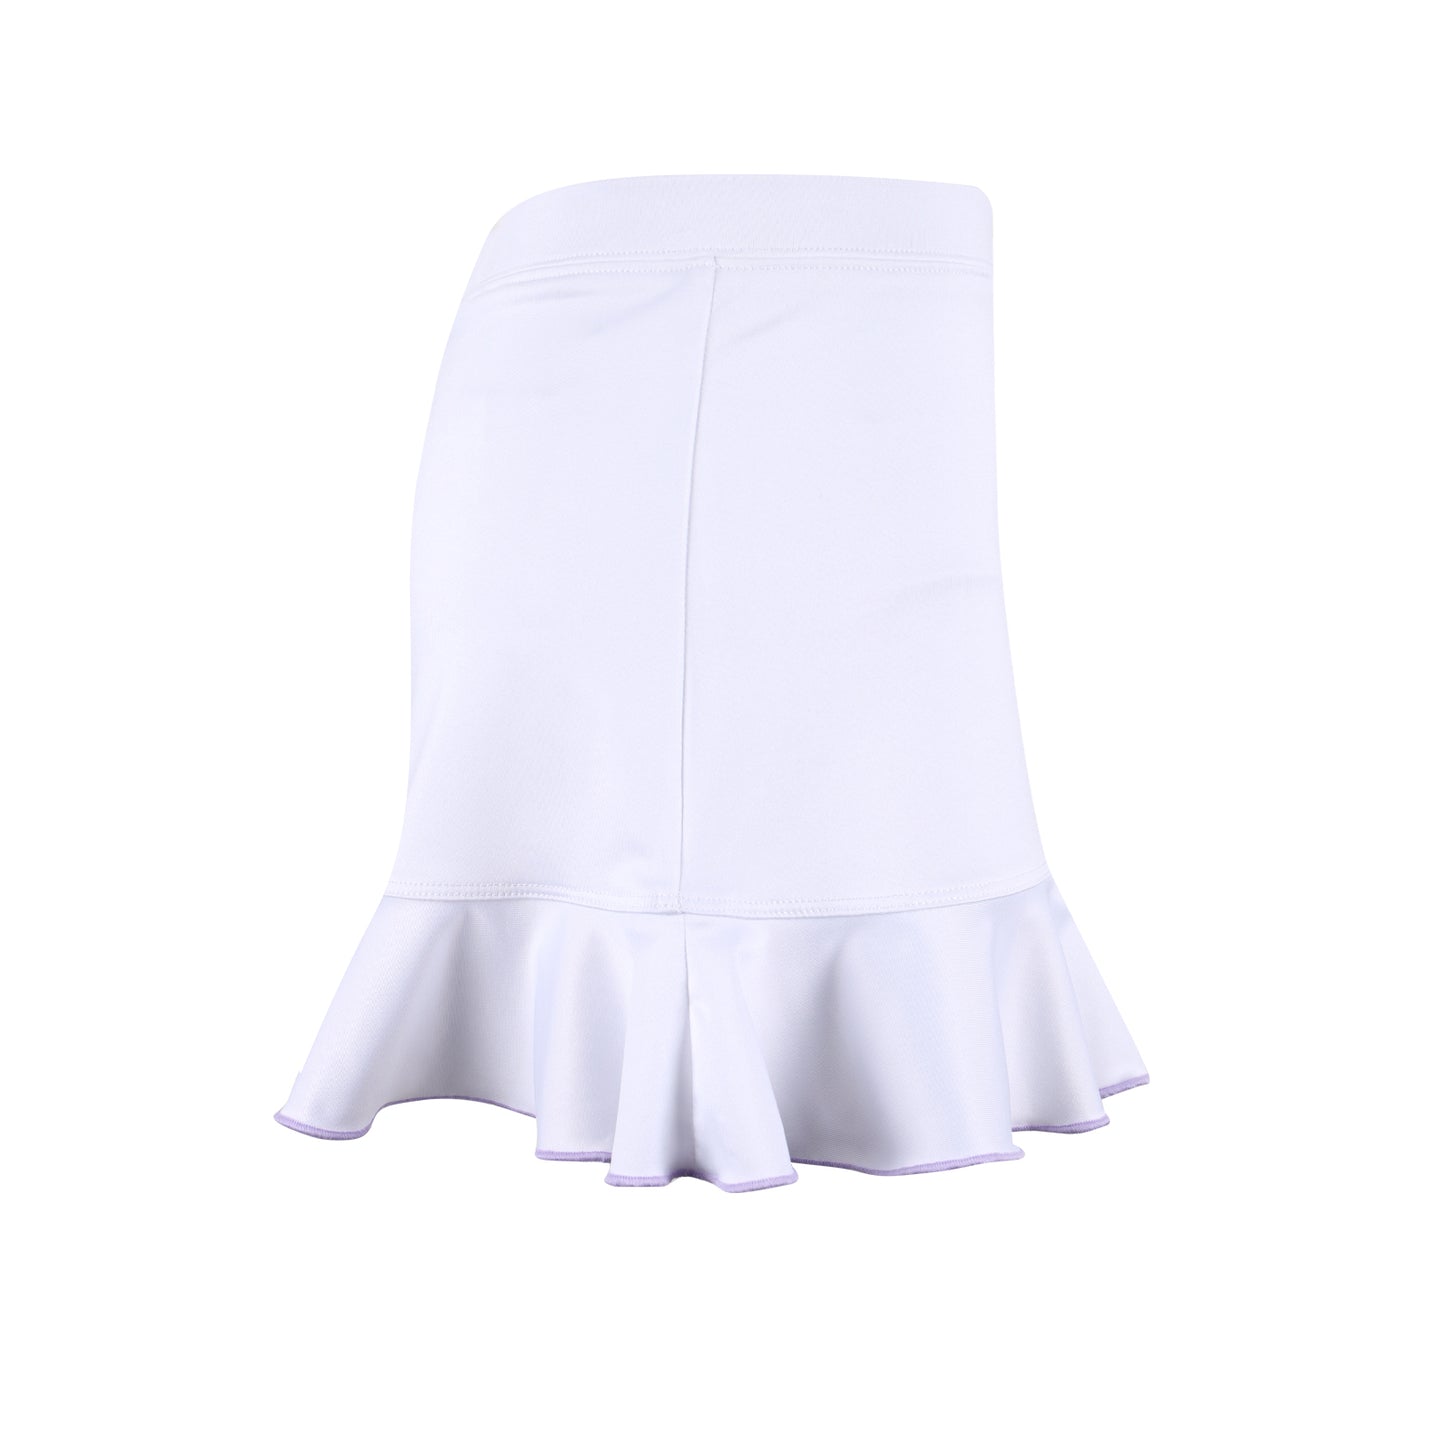 #Pansies in Paris Ruffle White Skirt - New!